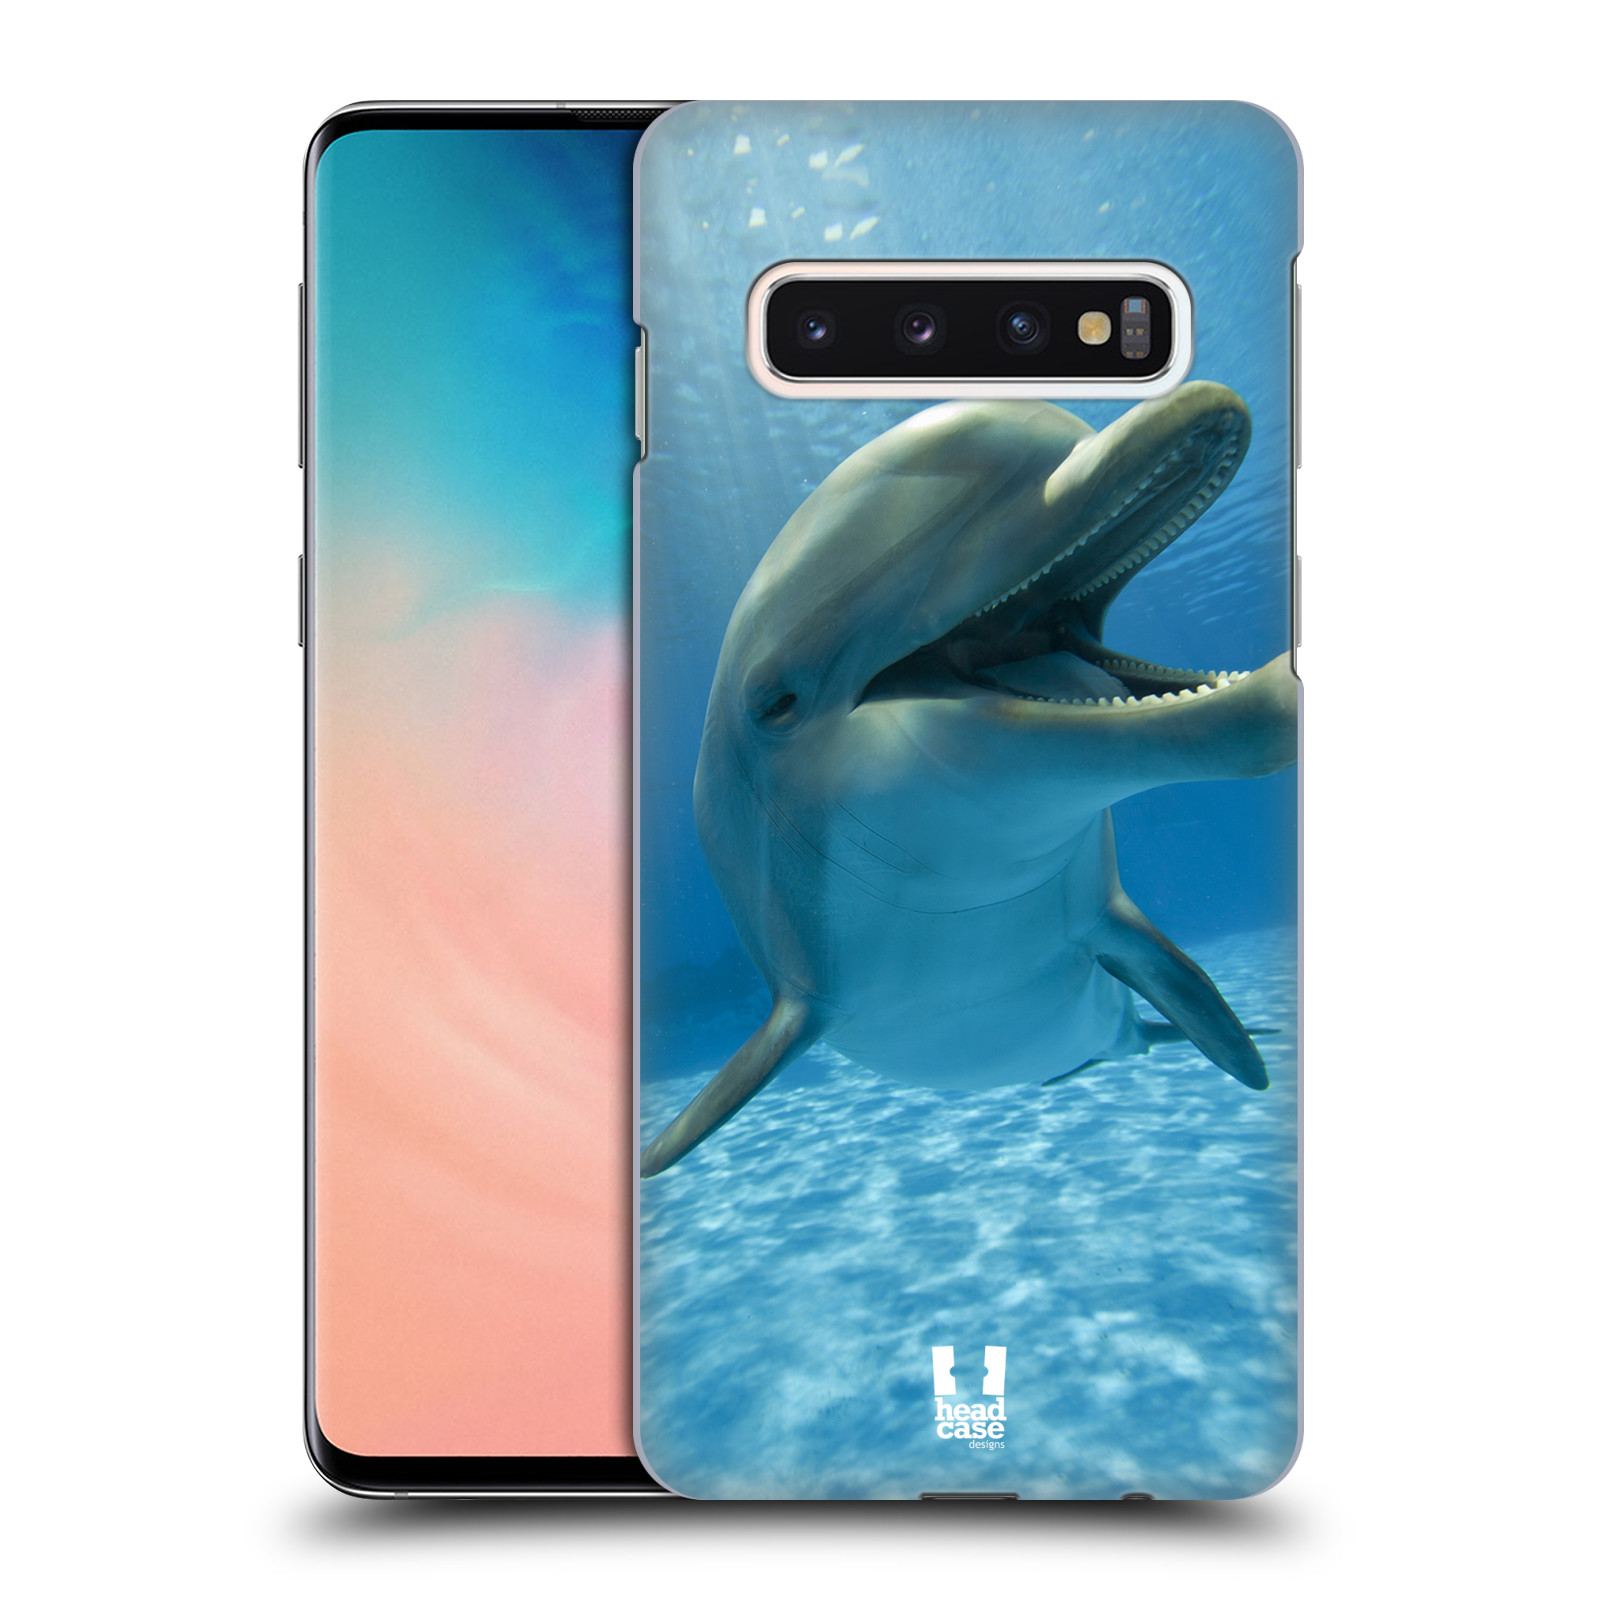 Zadní obal pro mobil Samsung Galaxy S10 - HEAD CASE - Svět zvířat delfín v moři